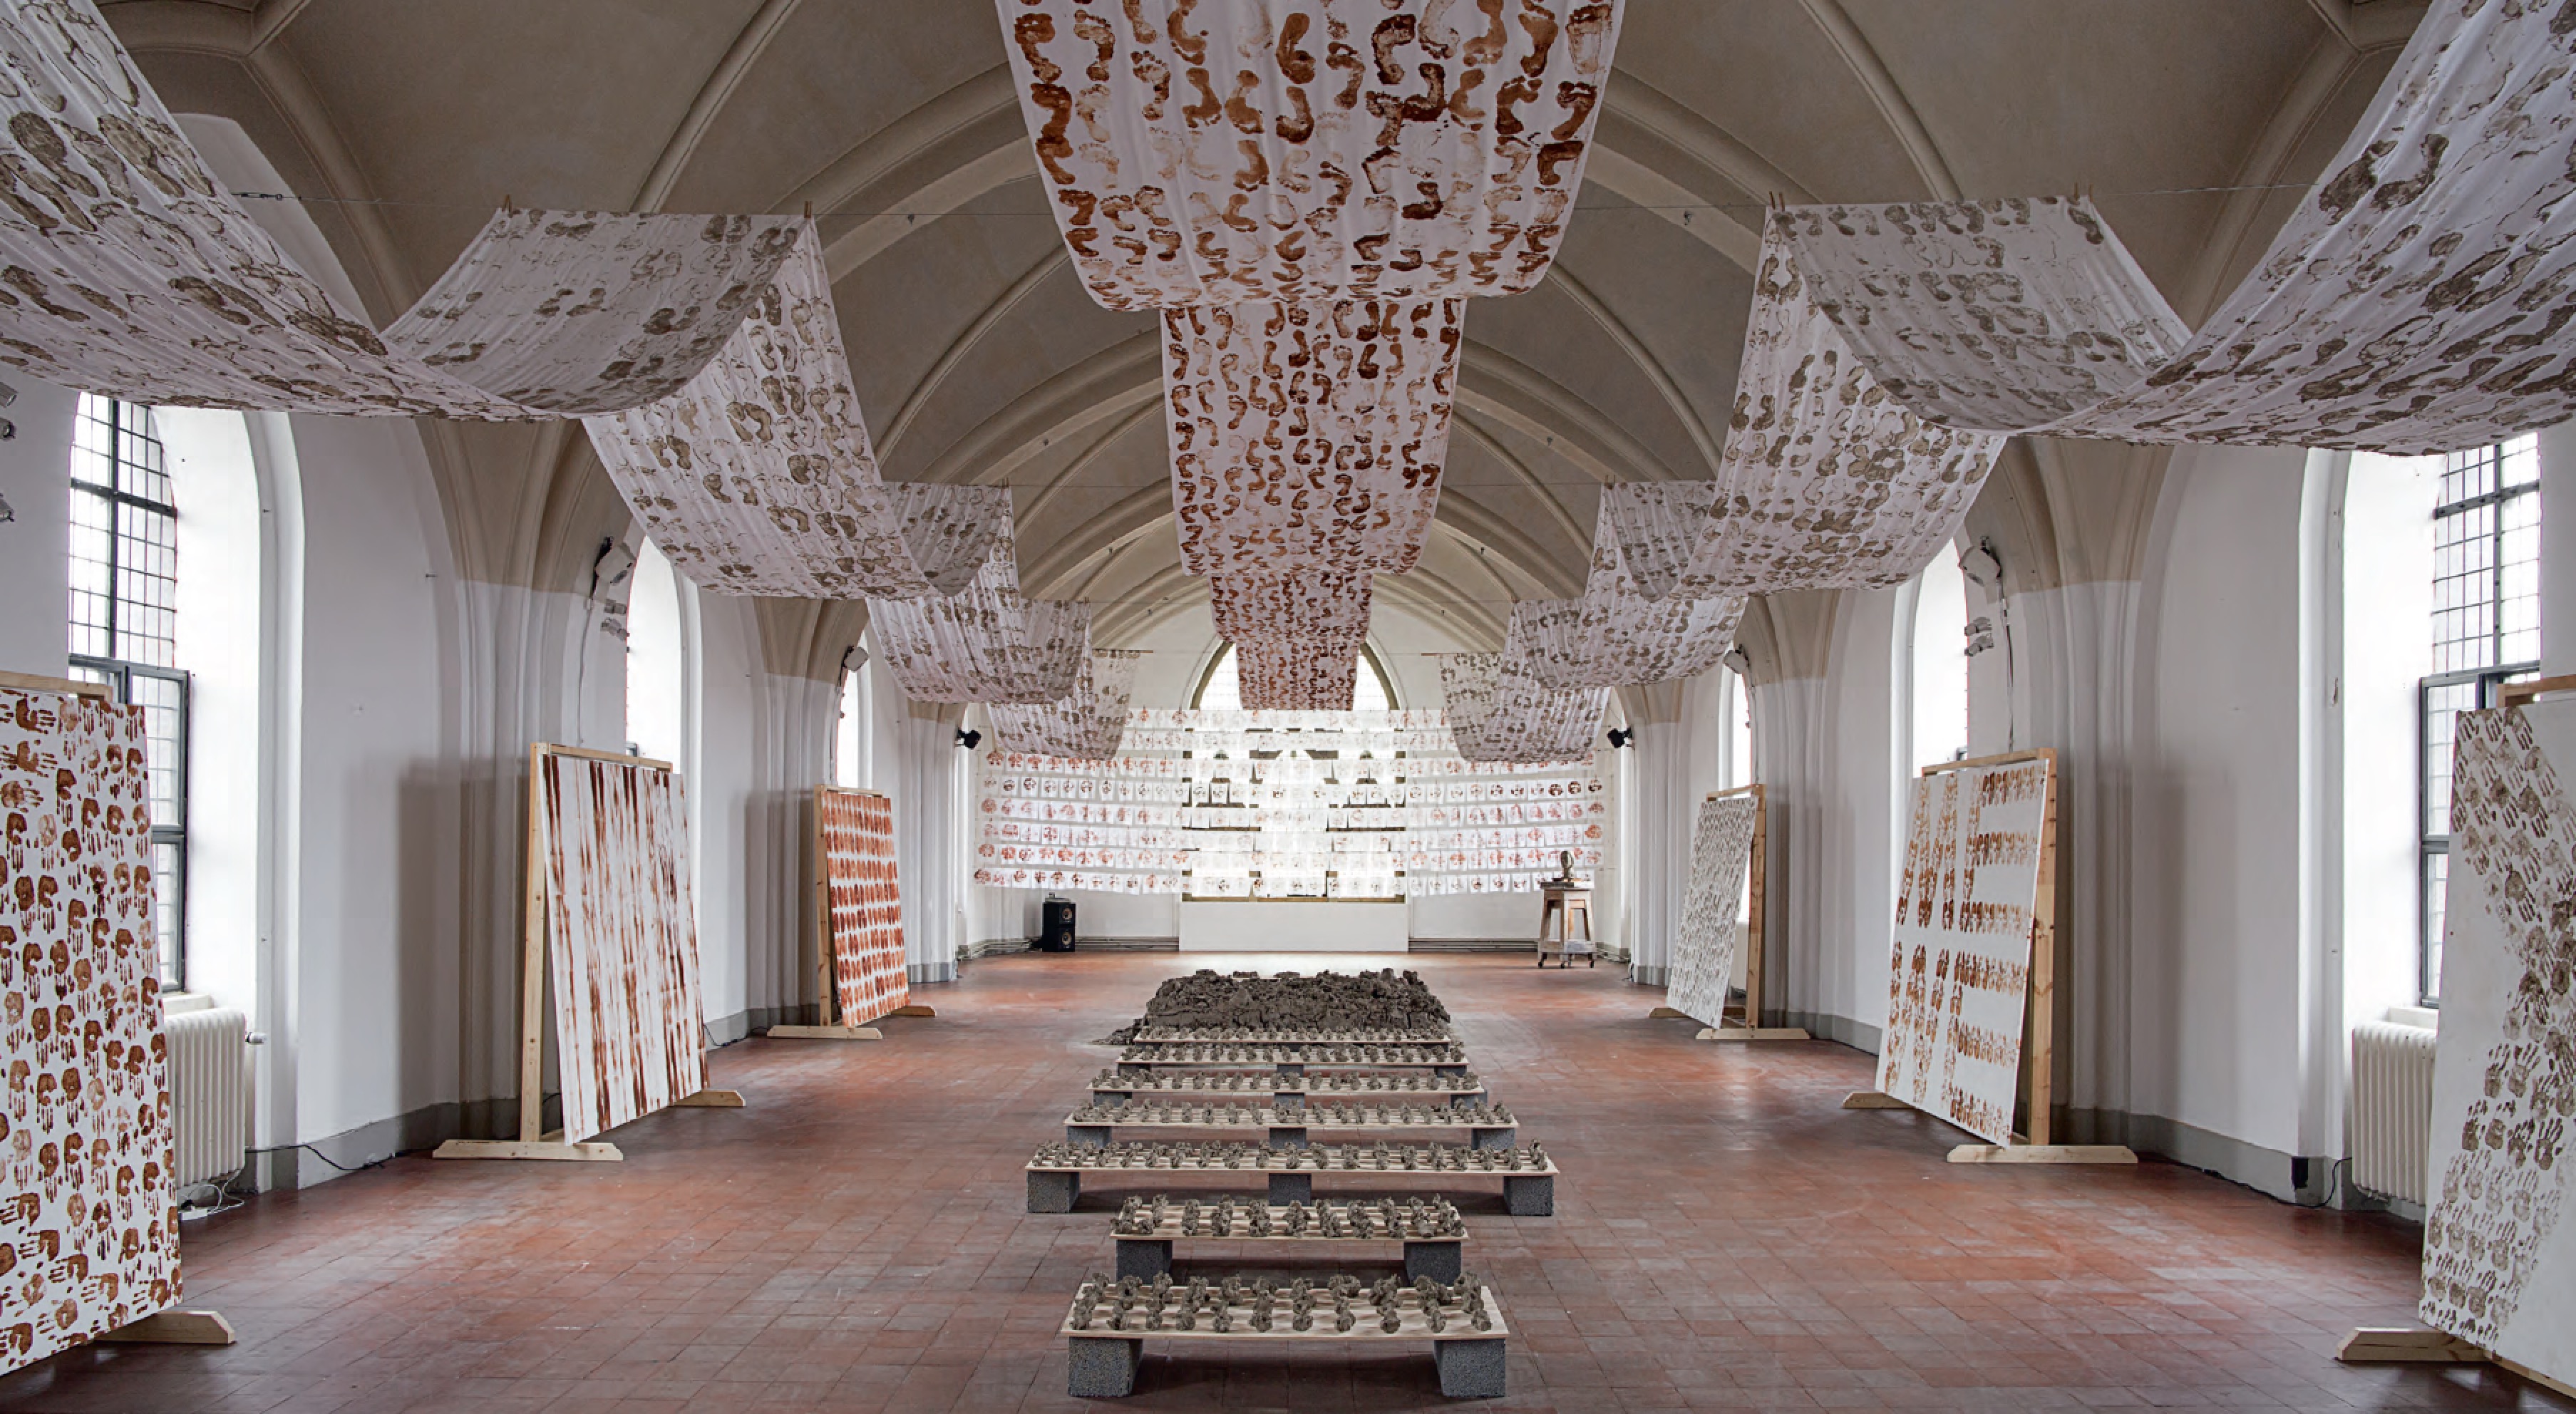 Installation view, ‘Being Human Being’ exhibition 2014, Kunsthal Nikolaj, Copenhagen